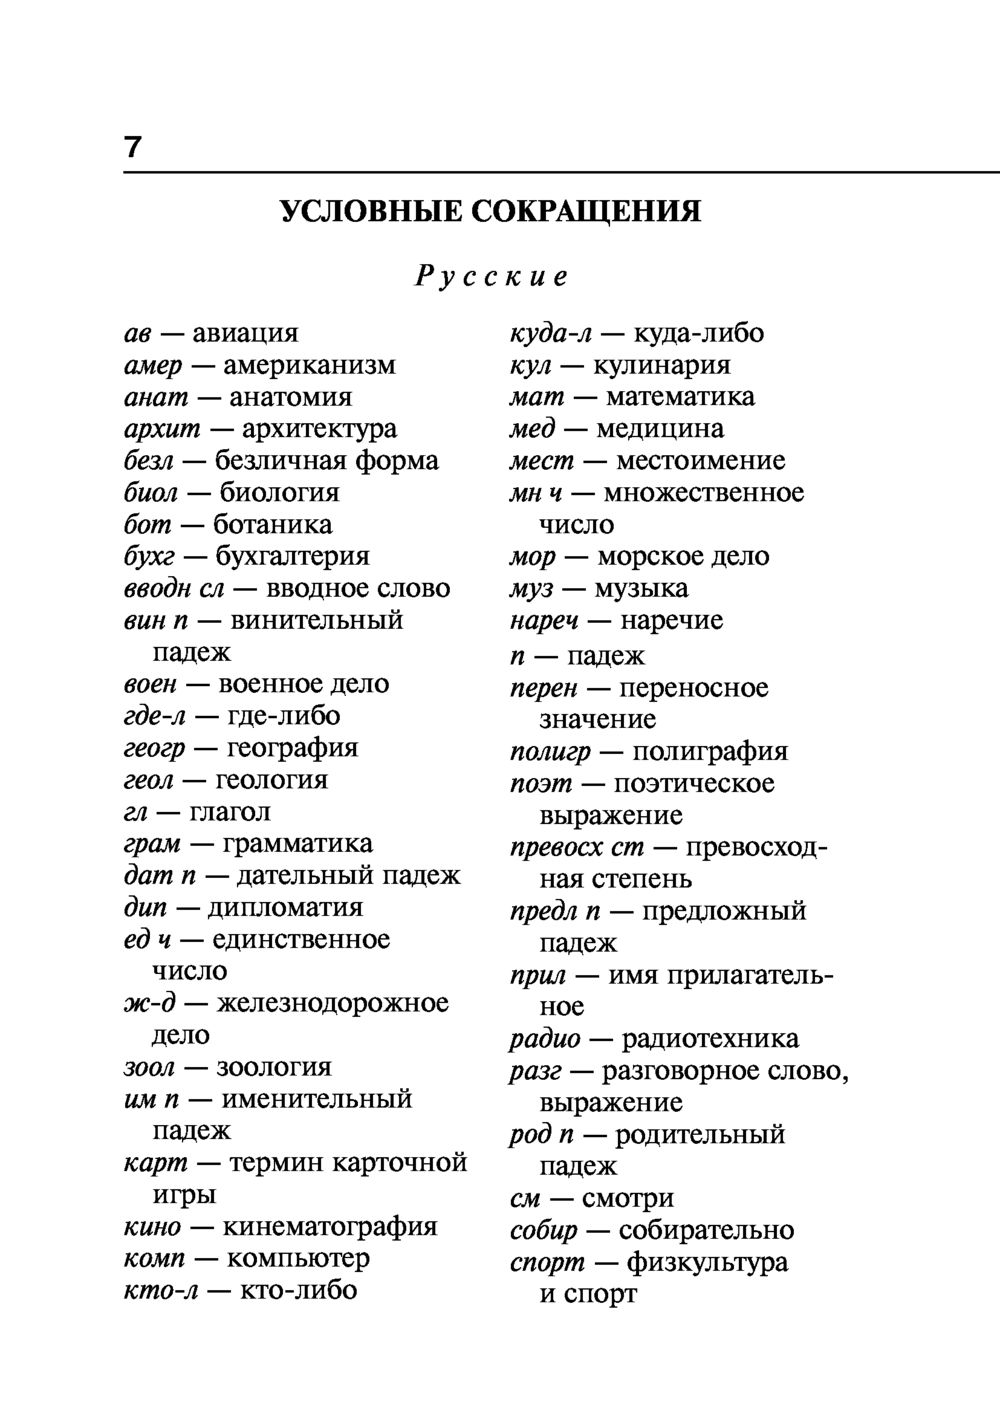 Playing перевод на русский с транскрипцией